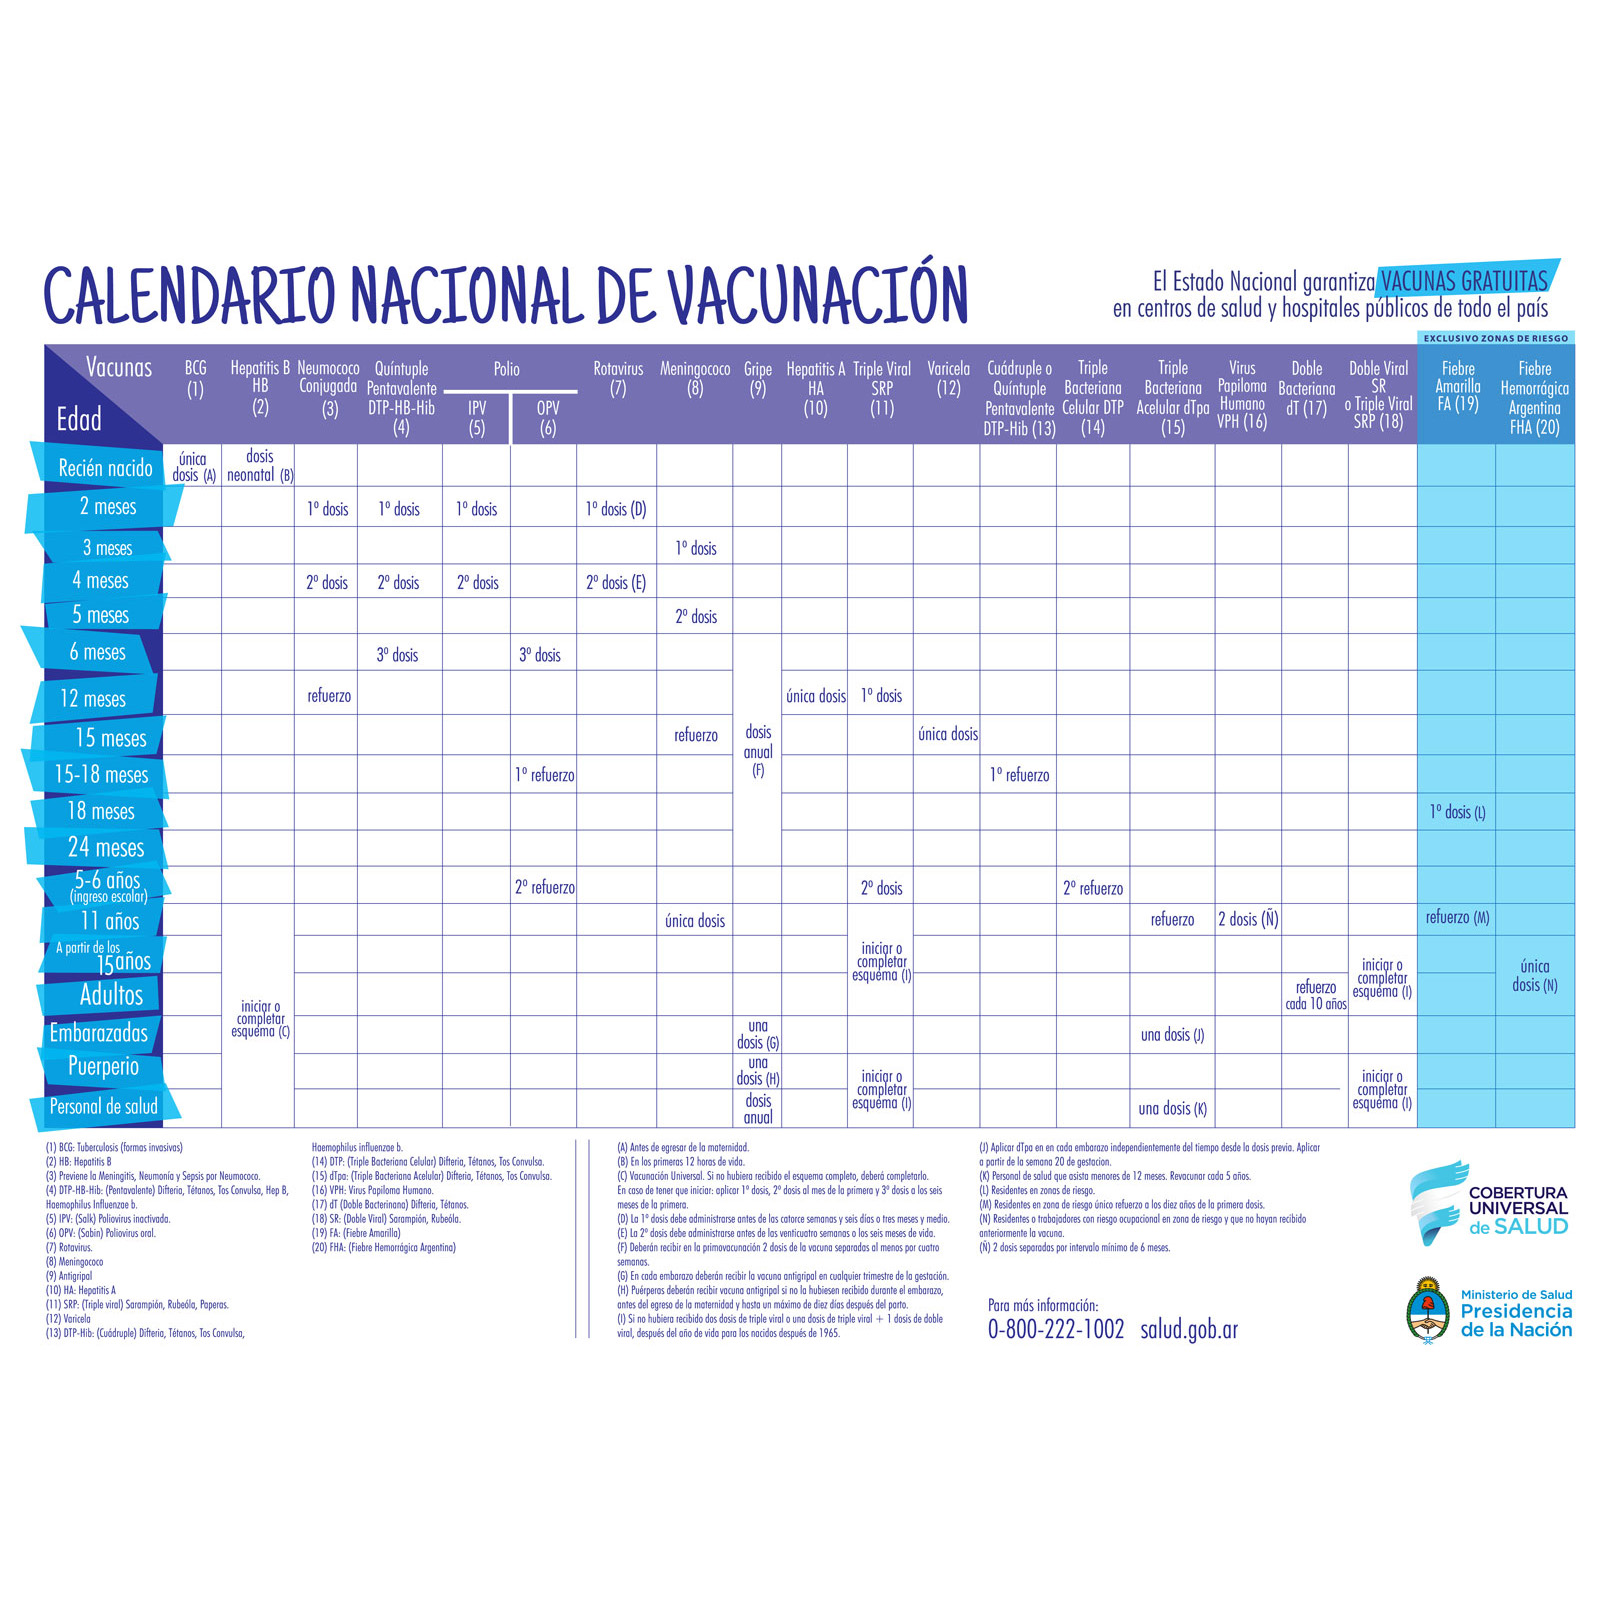 Calendario Nacional de Vacunación de la República Argentina 20